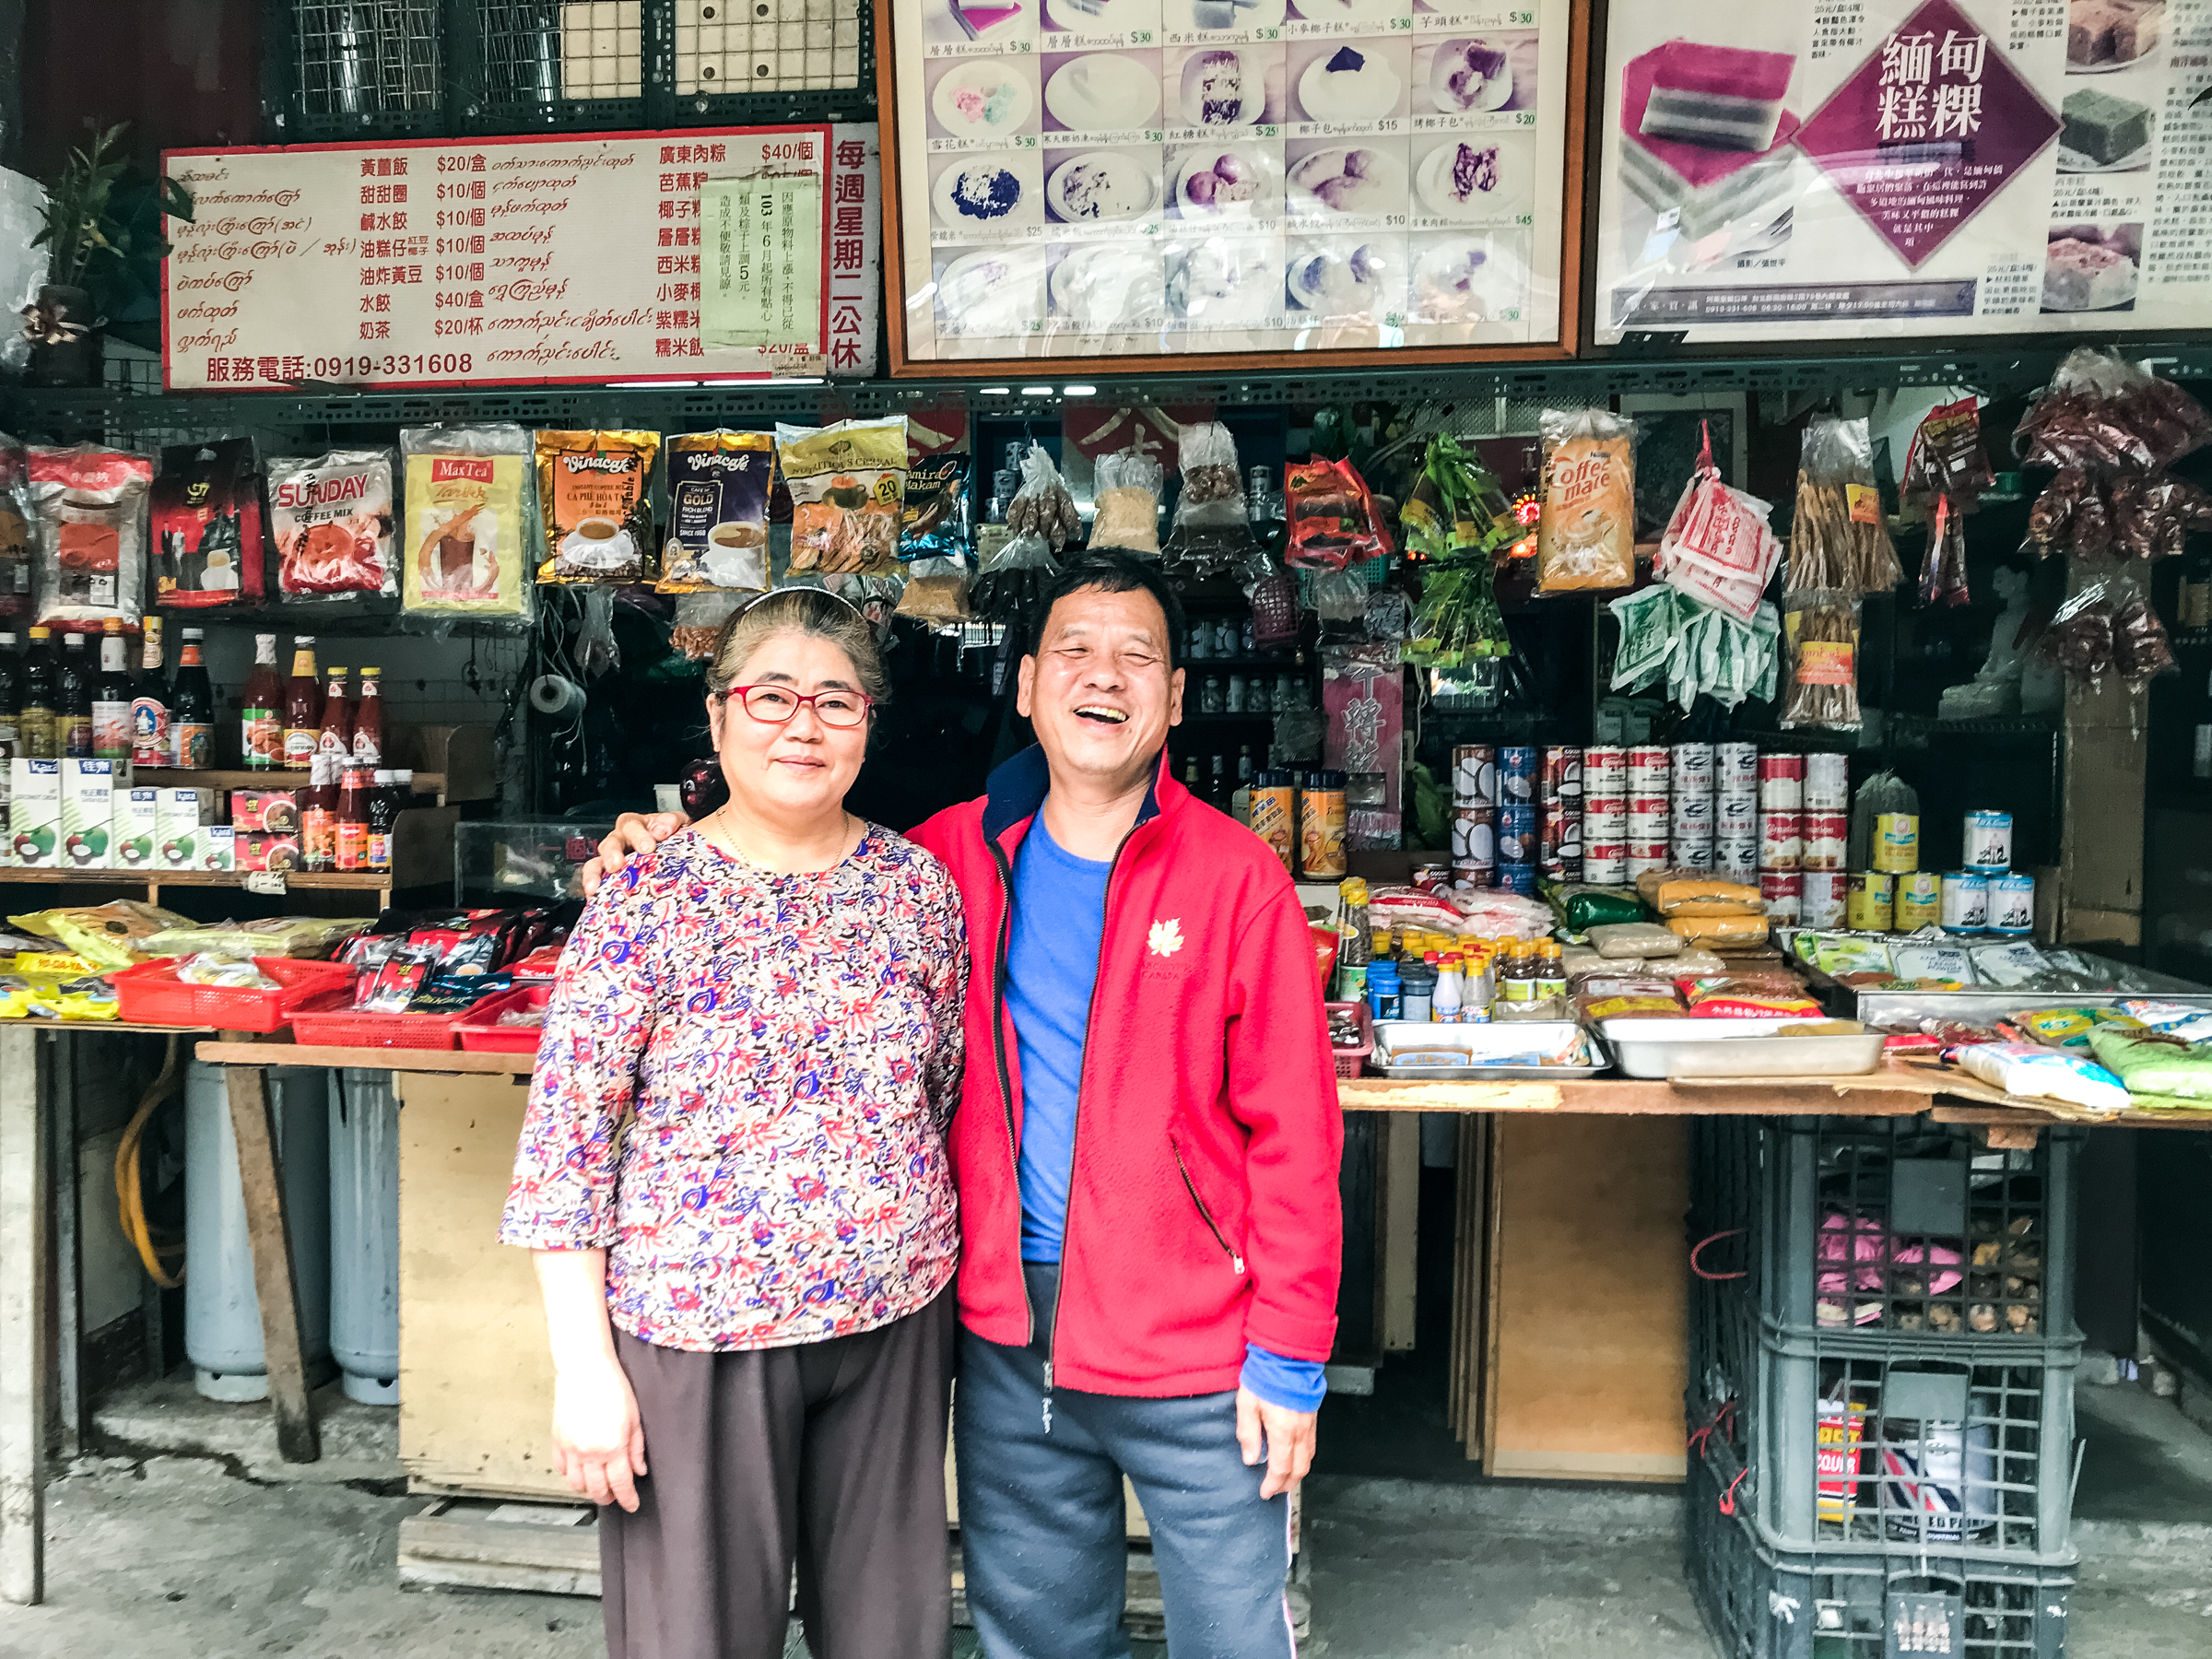 鳴個喇叭文化工作室 探索東南亞辛香料乾貨店舖與在地化後的新移民美食（照片來源/鳴個喇叭緬甸街）